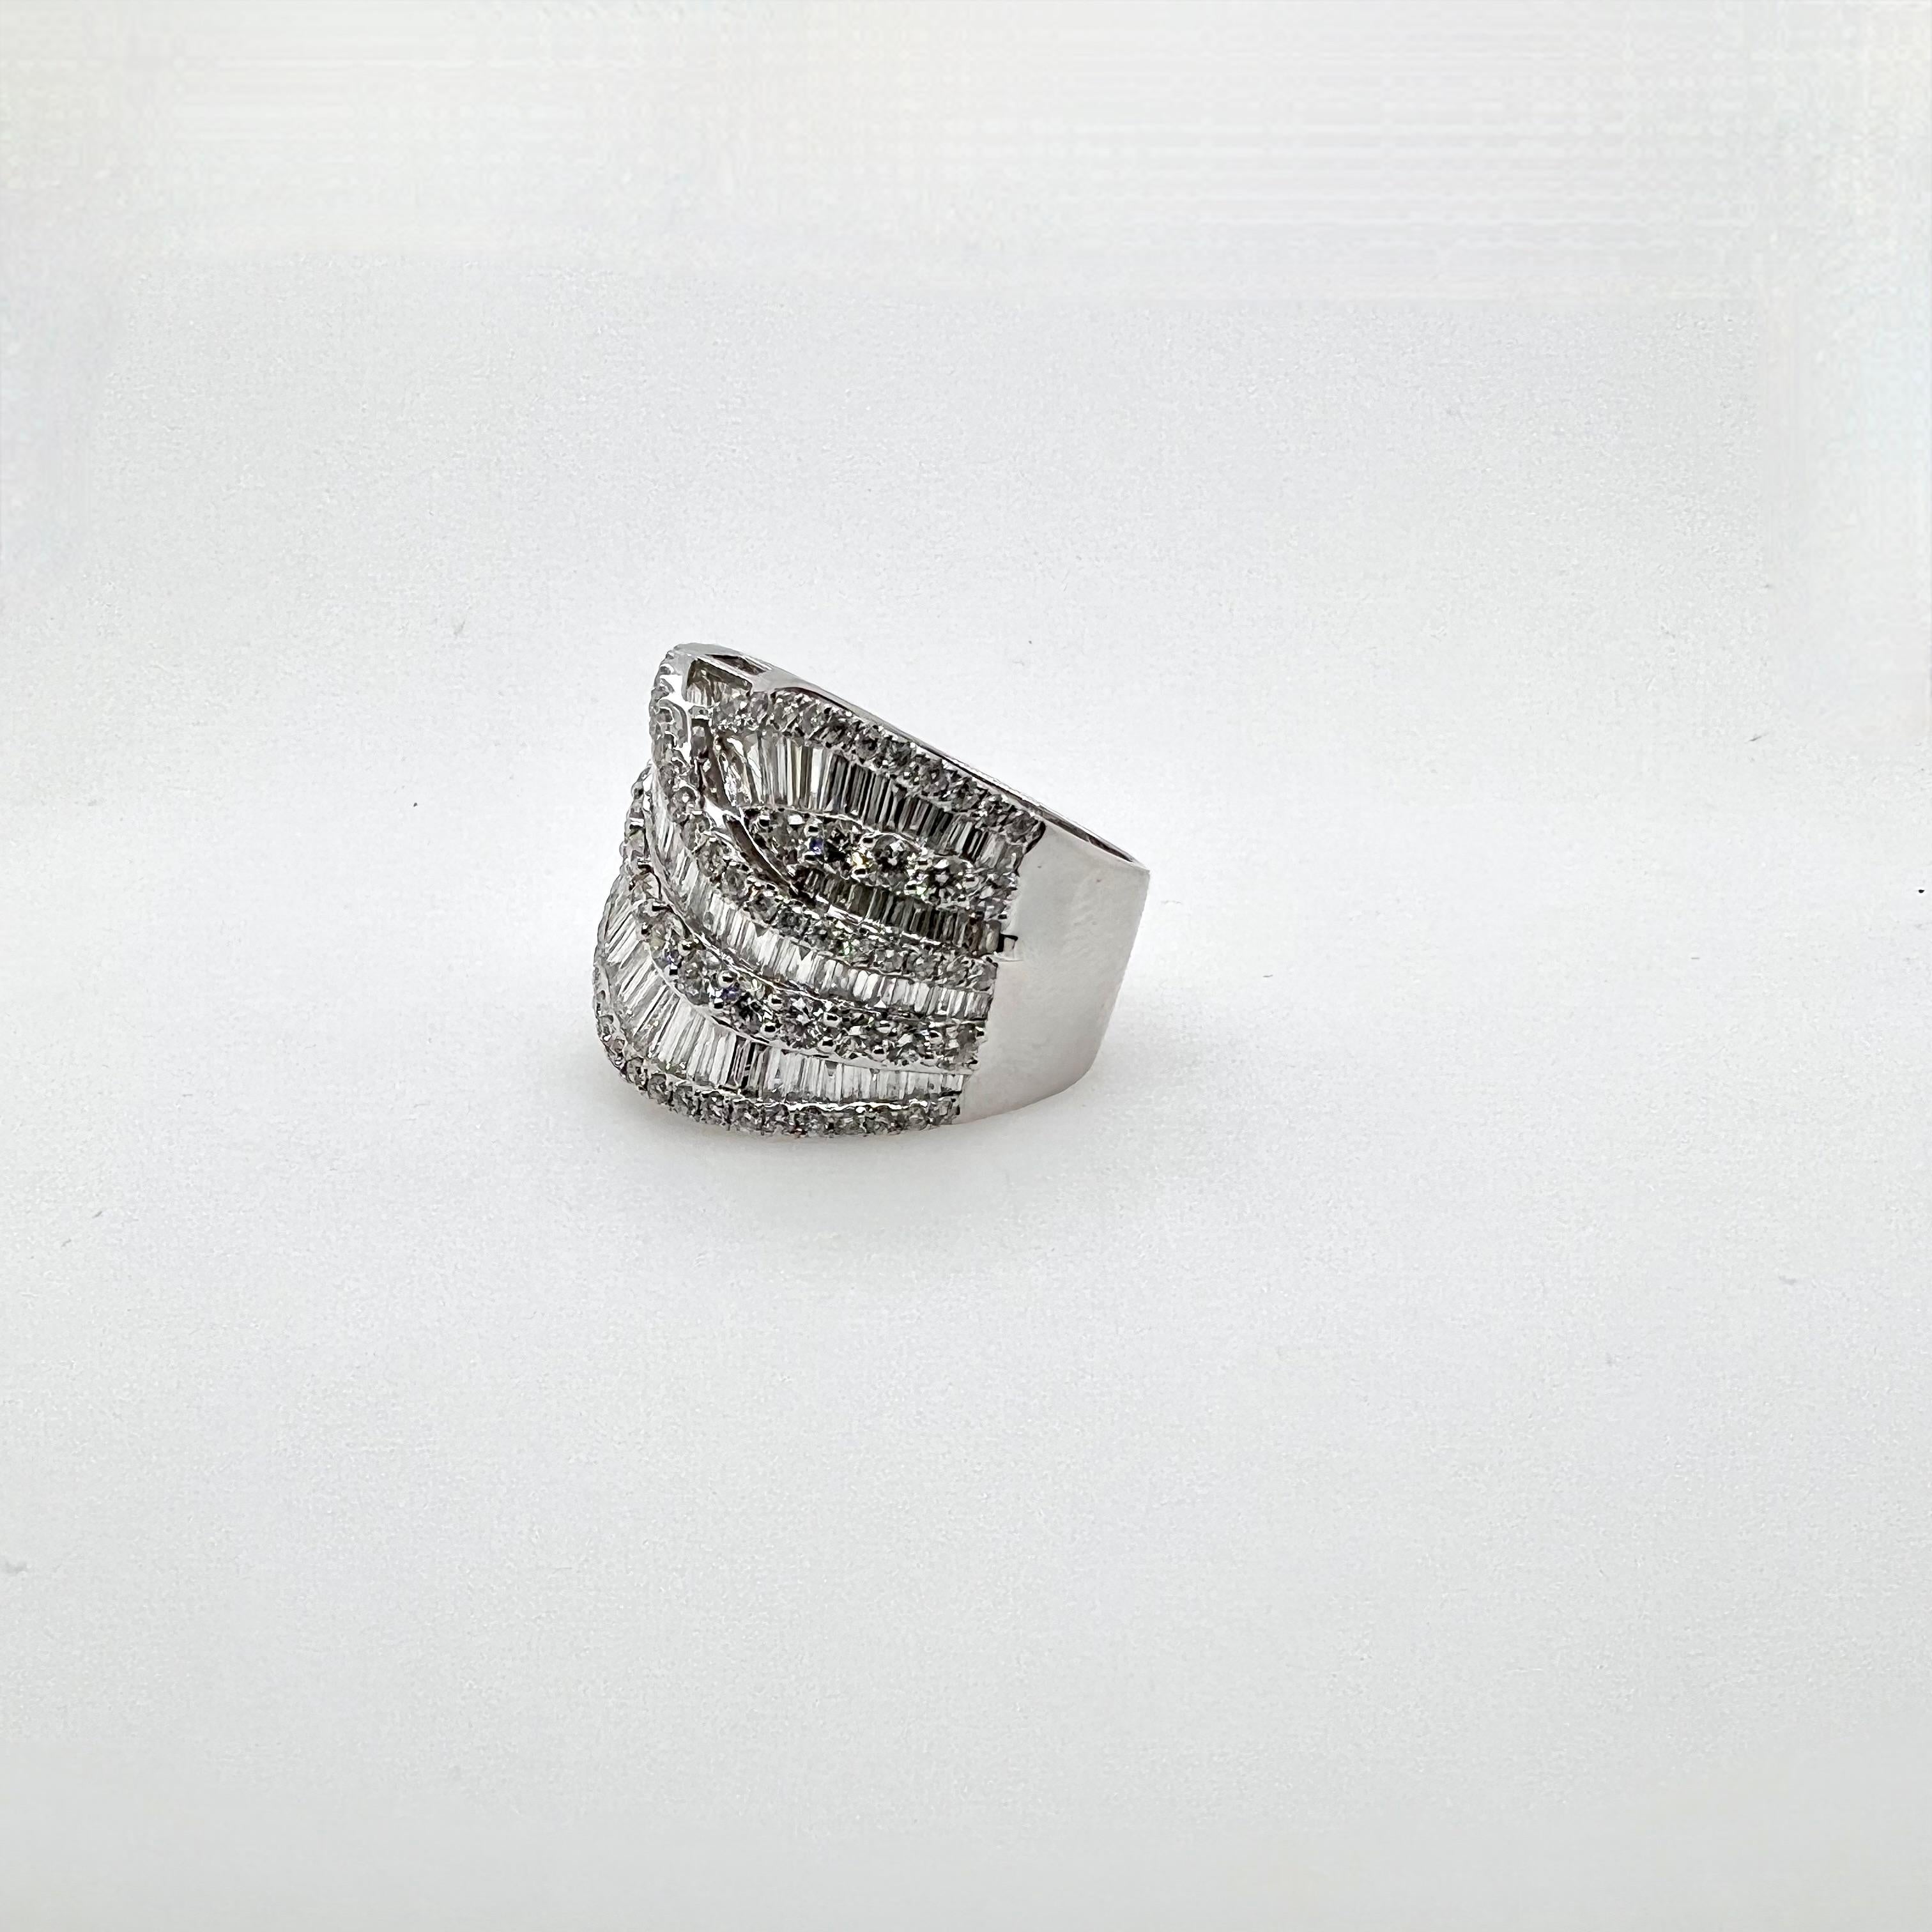 Dieser Diamant aus 18 Karat Weißgold ist elegant mit einem schönen Crossover-Muster versehen.  Die Baguettes und runden Brillanten sind sorgfältig gefasst, und das Muster macht den Ring vielseitig tragbar für legere oder geschäftliche Anlässe.  Dies